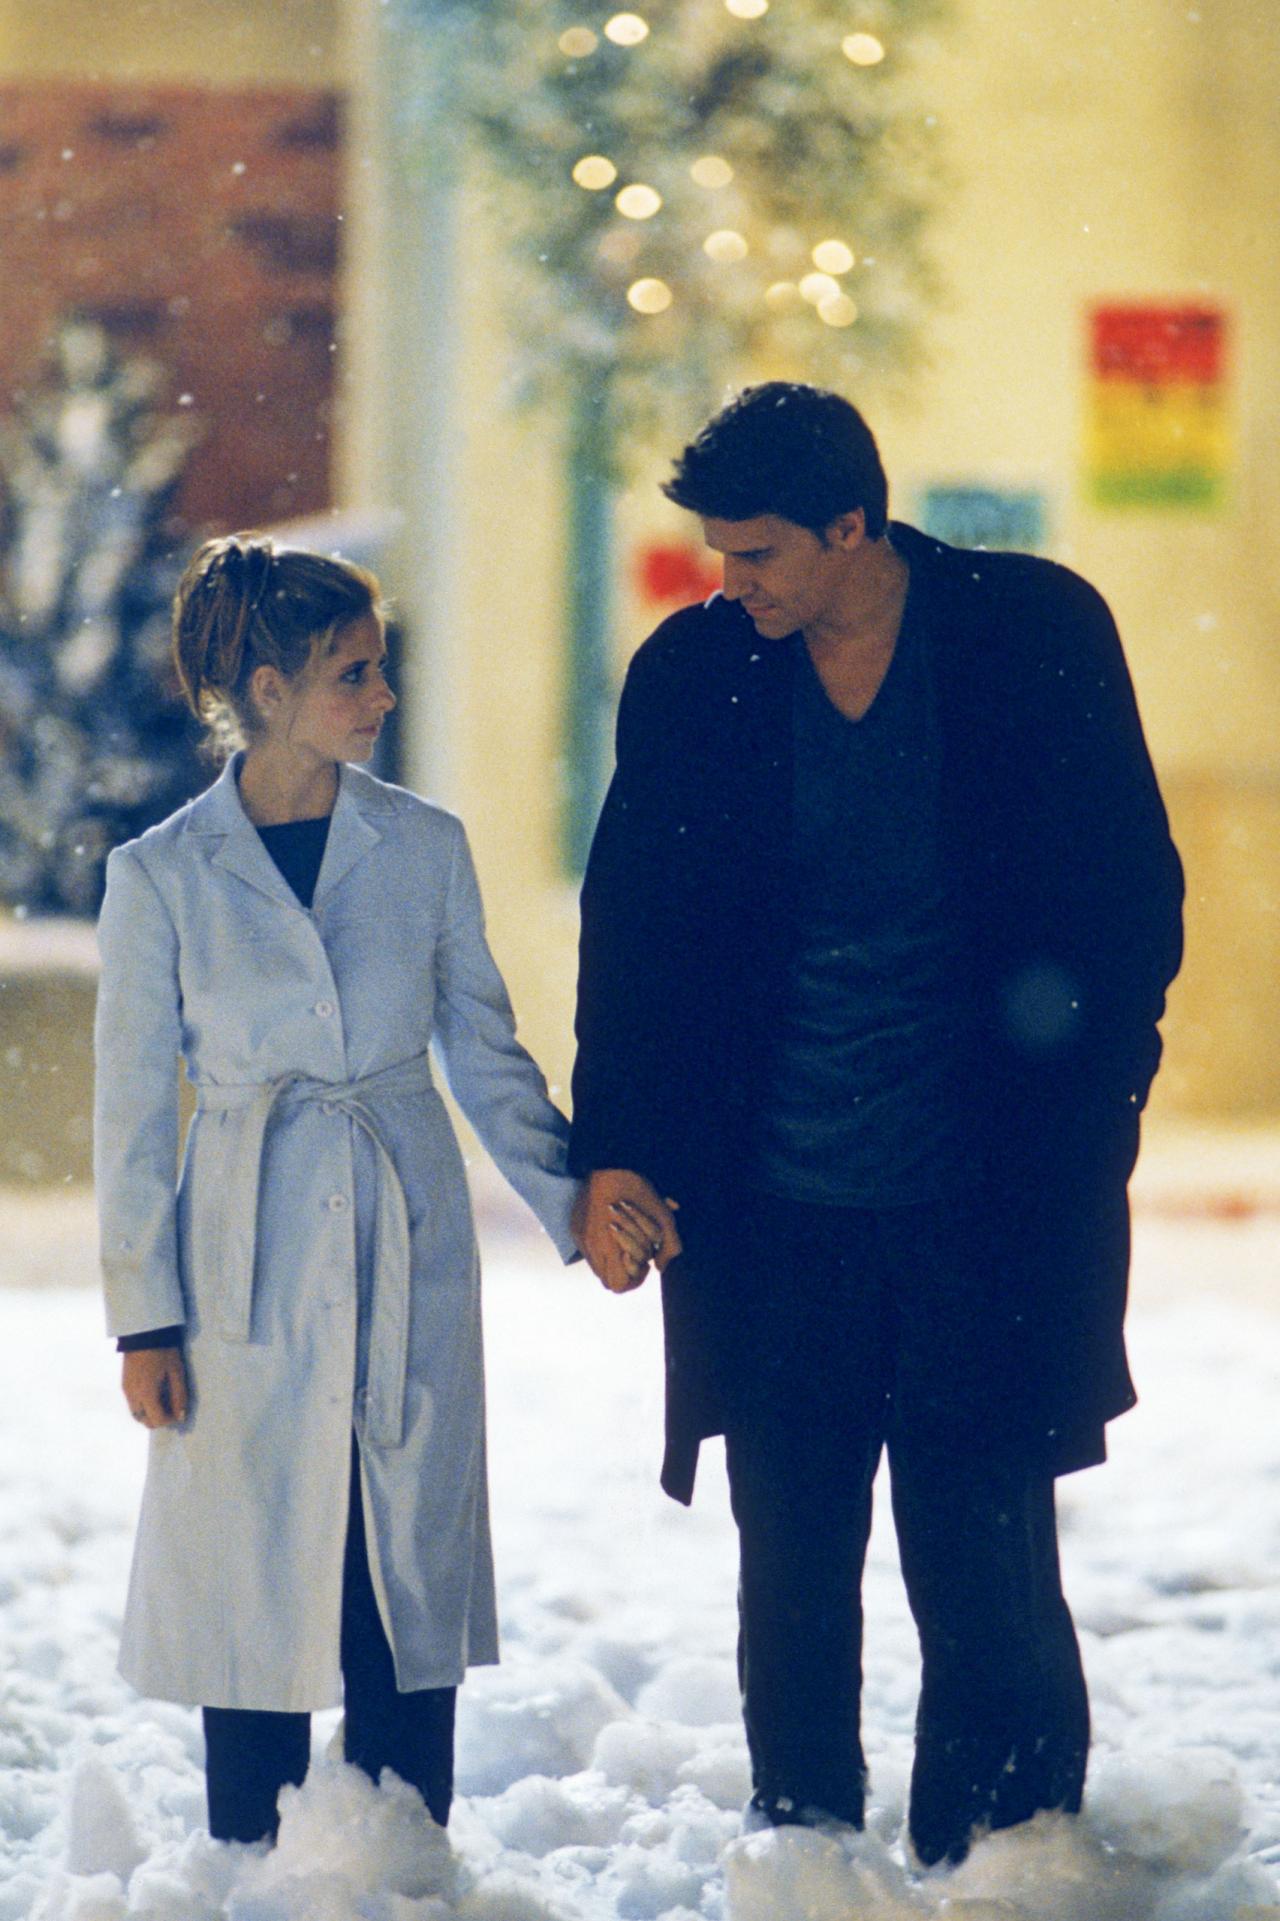 Buffy contre les vampires - Le Soleil de Noël (S03 E10)  Angel et Buffy, un vampire et une humaine, marchant côte à côte dans la lumière du jour, le long d’une rue couverte d’un épais duvet de neige. Un authentique miracle de Noël signé Joss Whedon. Au bout d’une nuit d’errance au milieu des fantômes de ses victimes passées, obsédé par d’insurmontable remords, Angel
songe au suicide. Mais Buffy arrive pour le faire changer d’avis. Alors que pointe le jour, d’intenses chutes de neige bloquent les rayons du soleil et tous deux s’offrent une déambulation d’une poésie désarmante, au bout d’un épisode qui réussit à offrir une issue salvatrice aux thèmes christiques du sacrifice et de la culpabilité.